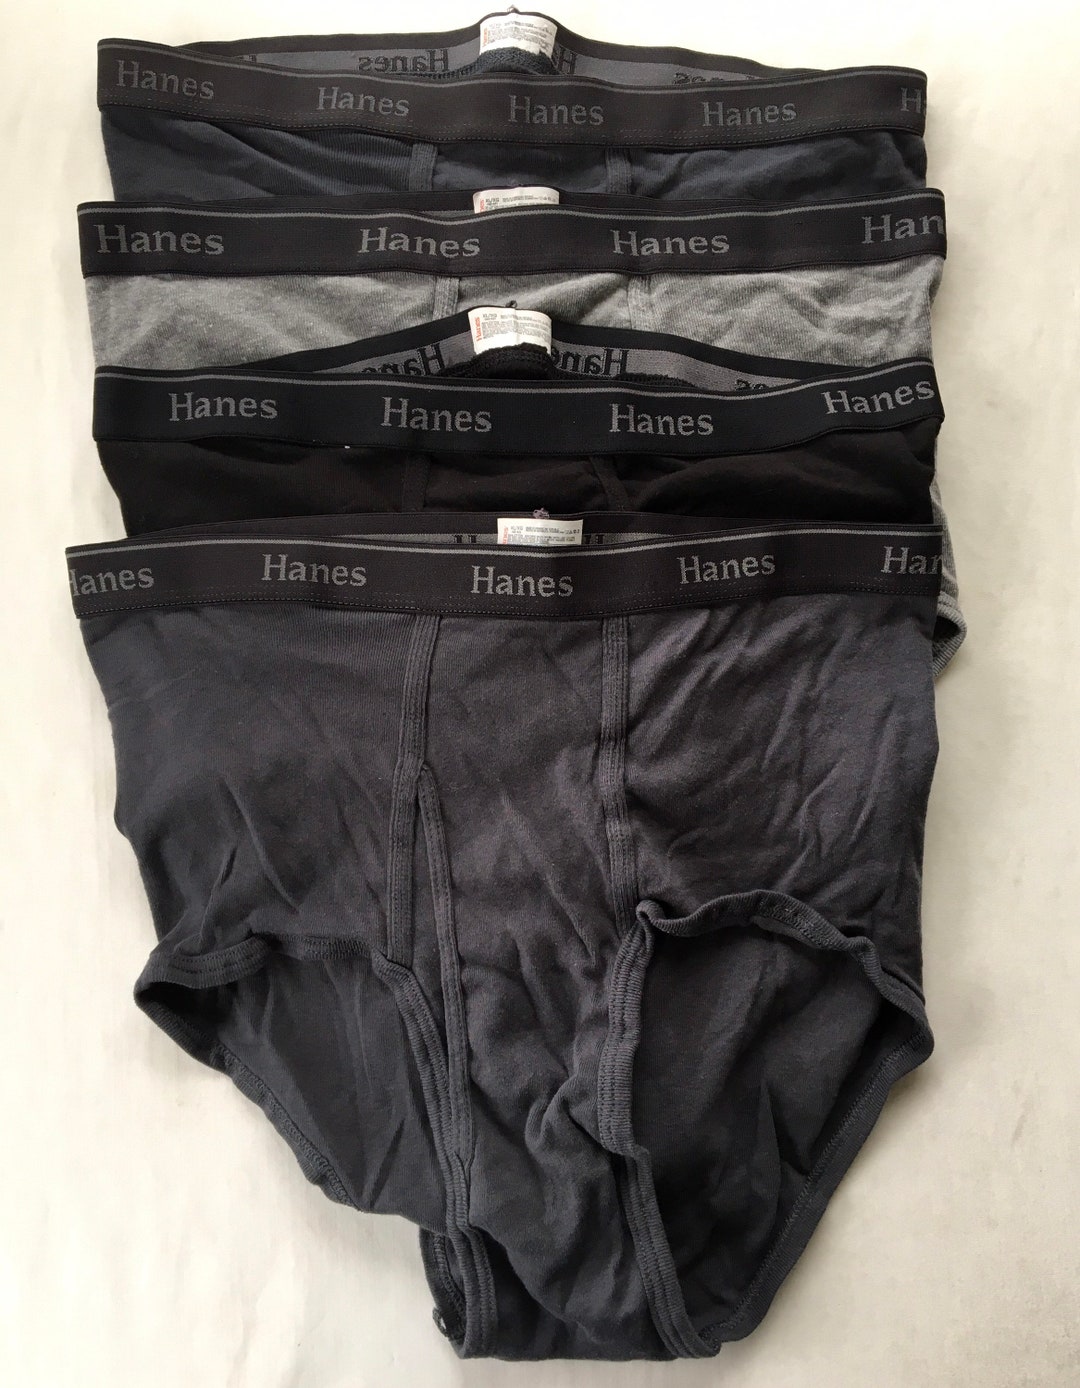 Vintage Hanes Briefs Cotton Underwear Black Gray Colored Mens - Etsy